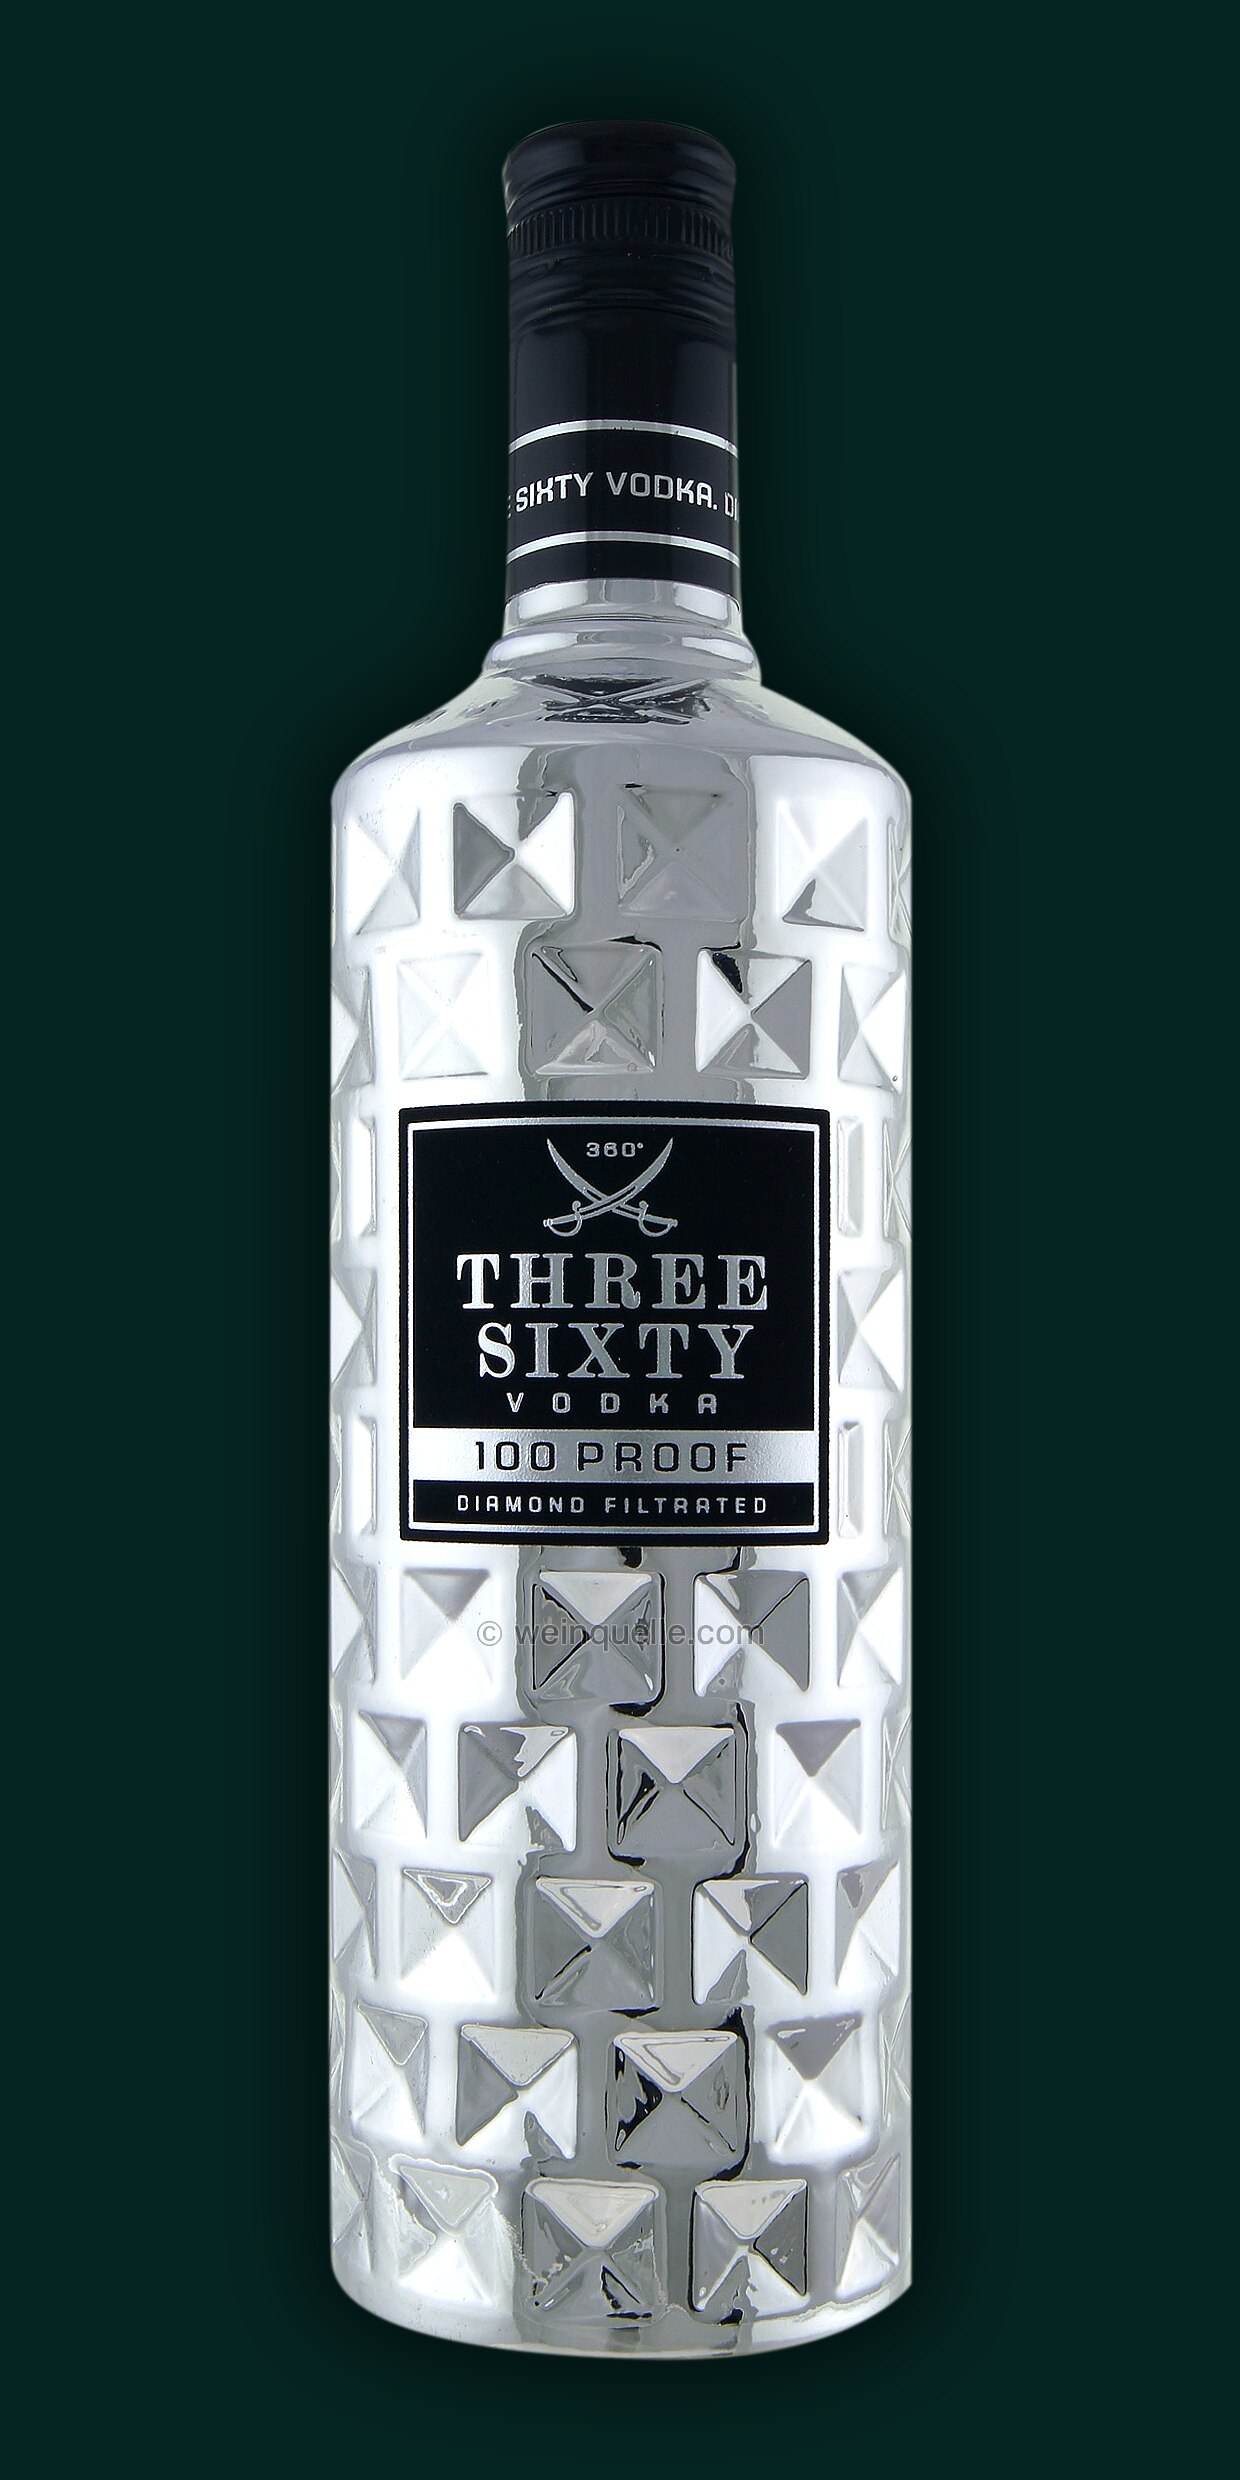 Three Sixty 20,99 € Proof 50%, Vodka 100 Weinquelle Lühmann 